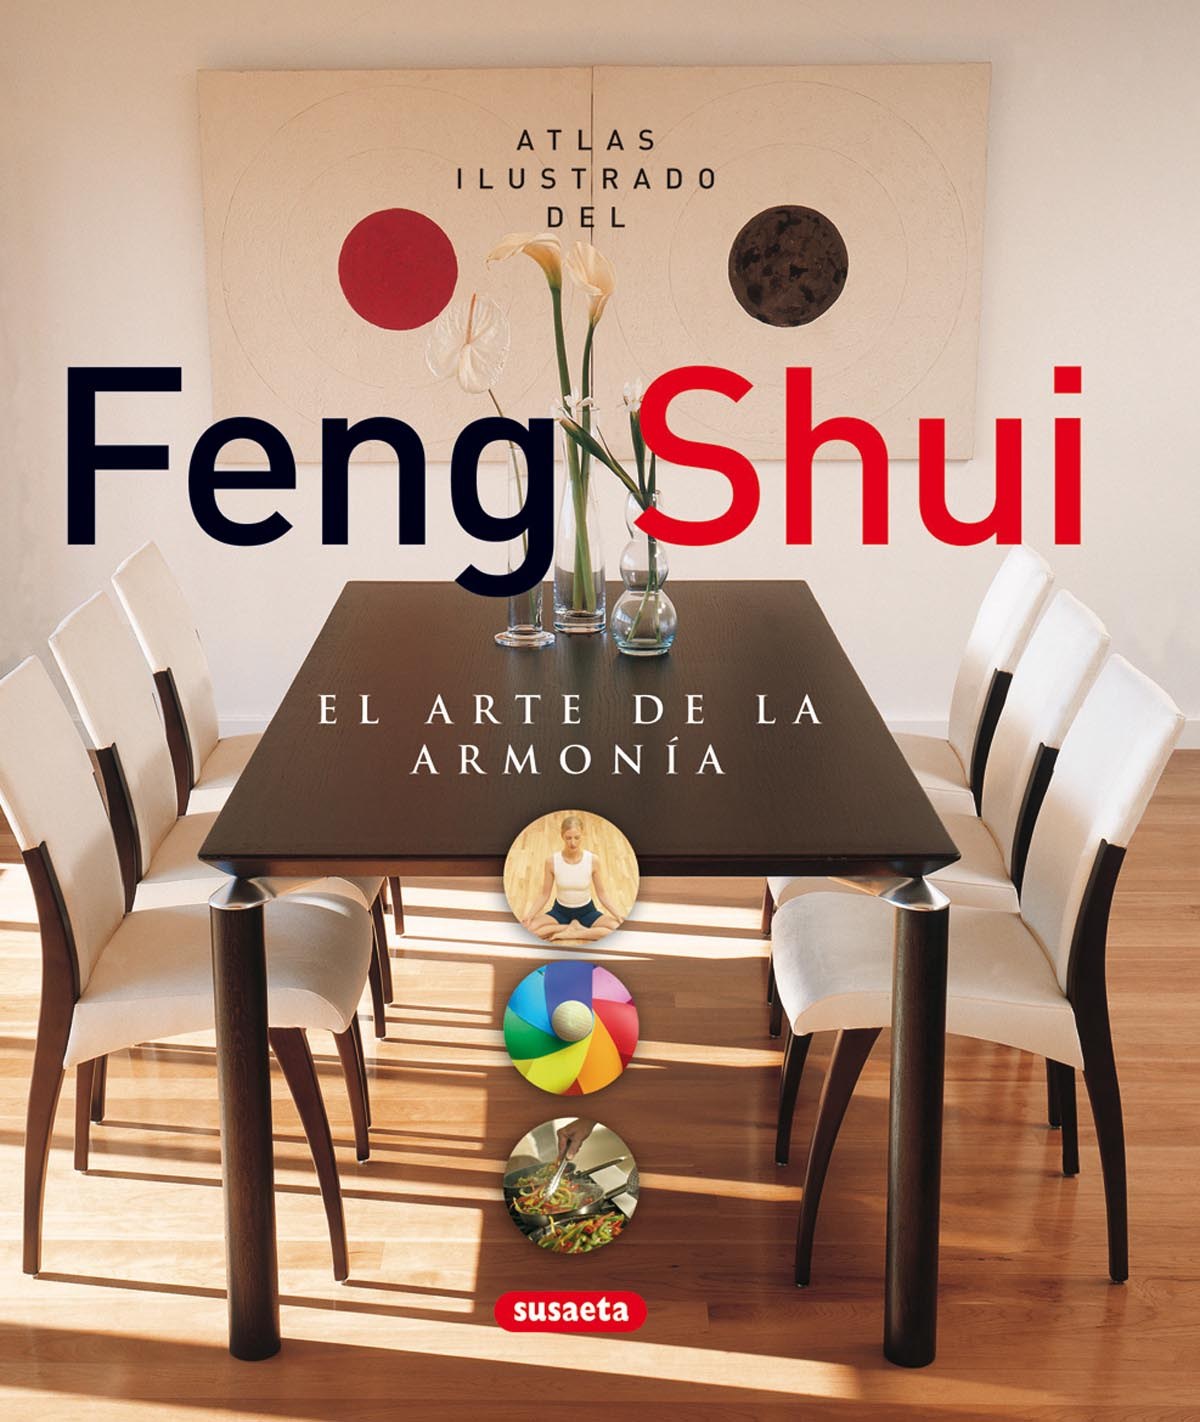 Atlas ilustrado del feng shui. El arte de la armonía - Varios autores